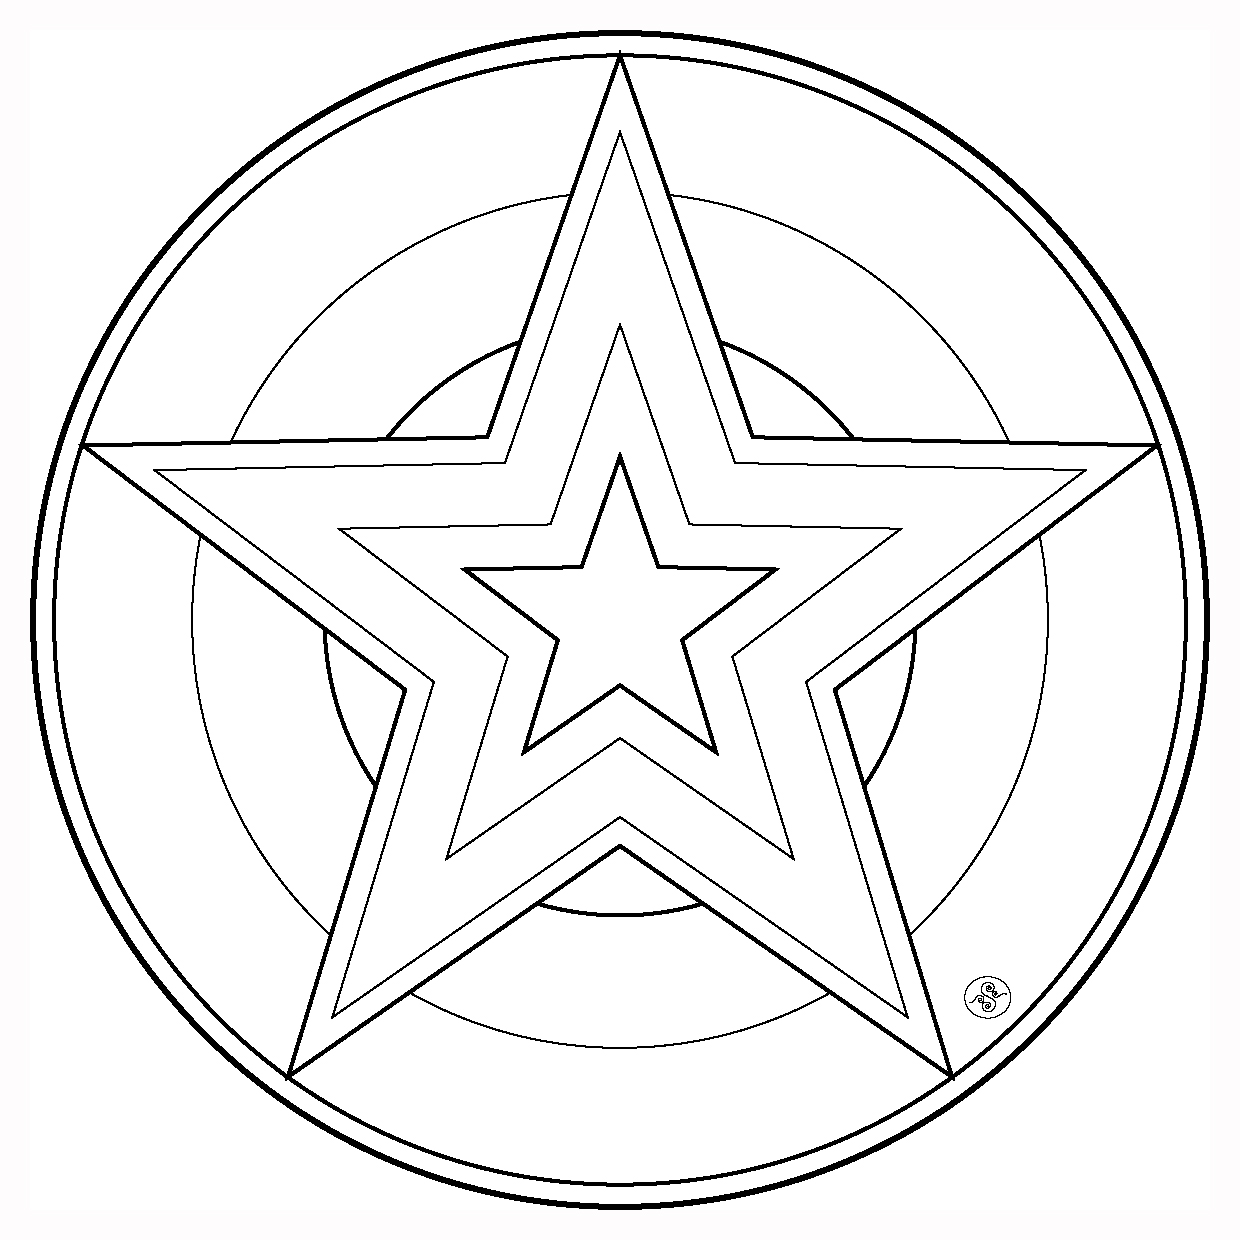 Coloring page: Star Mandalas (Mandalas) #117956 - Free Printable Coloring Pages